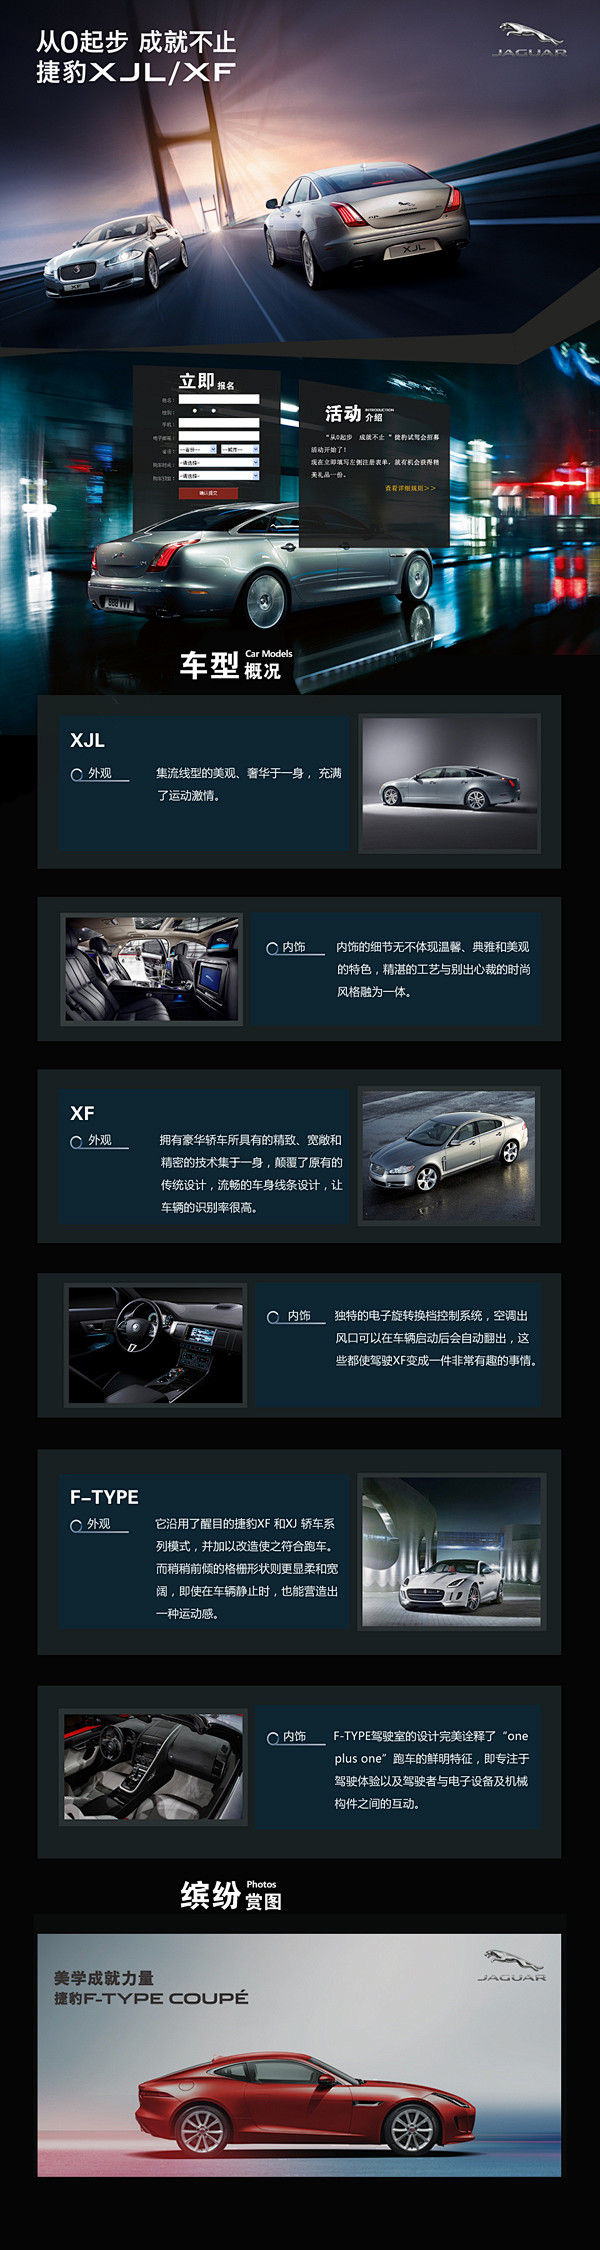  汽车网站模板PSD素材 